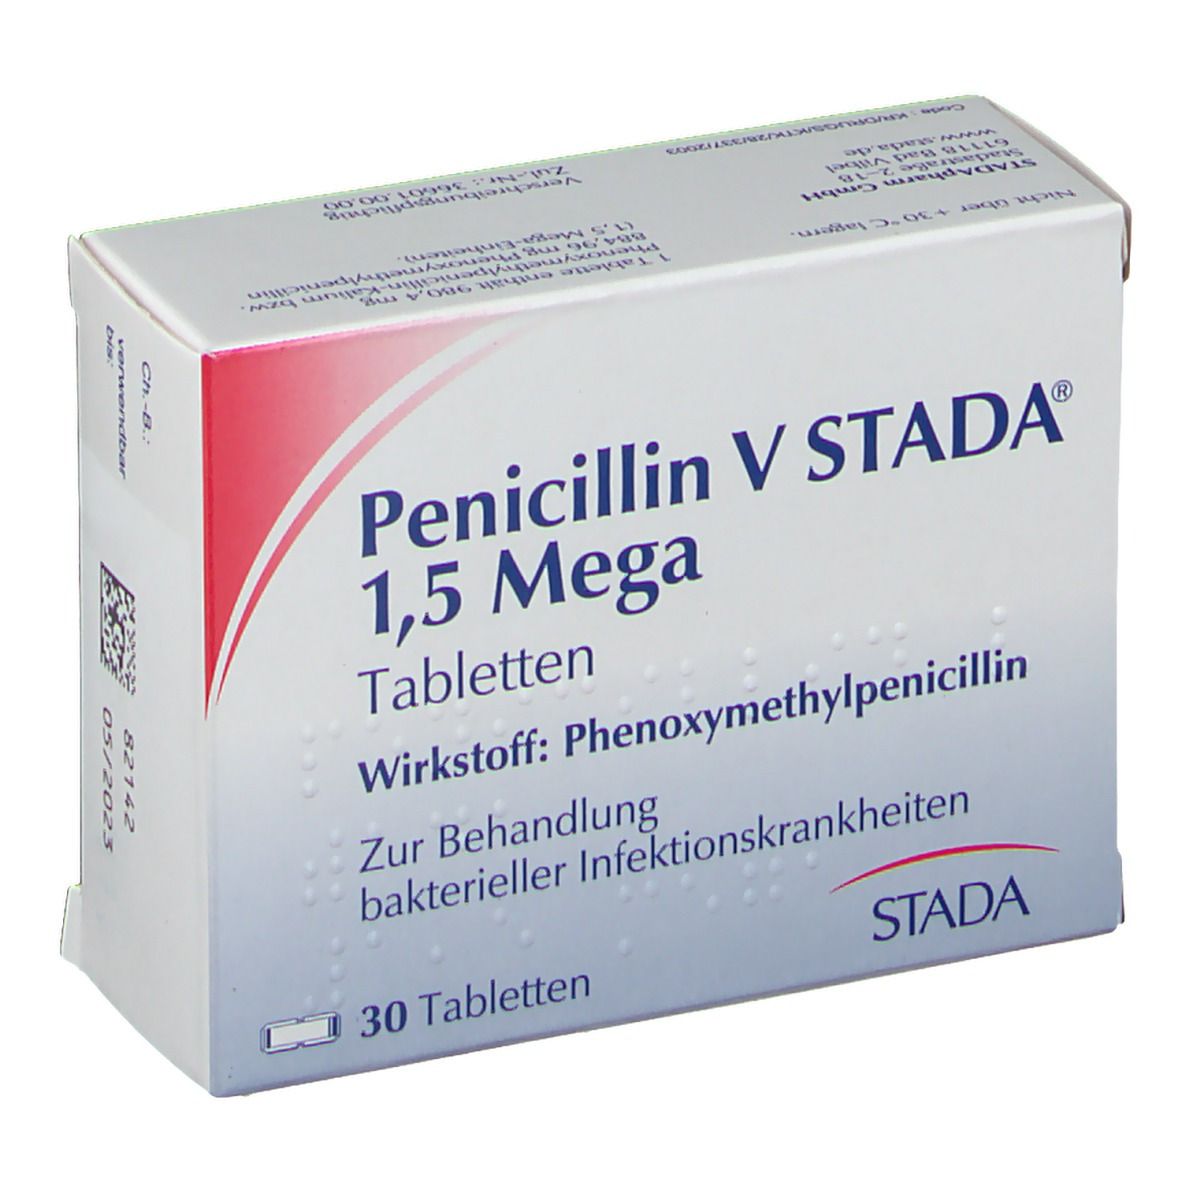 Penicillin V STADA® 1,5 Mega